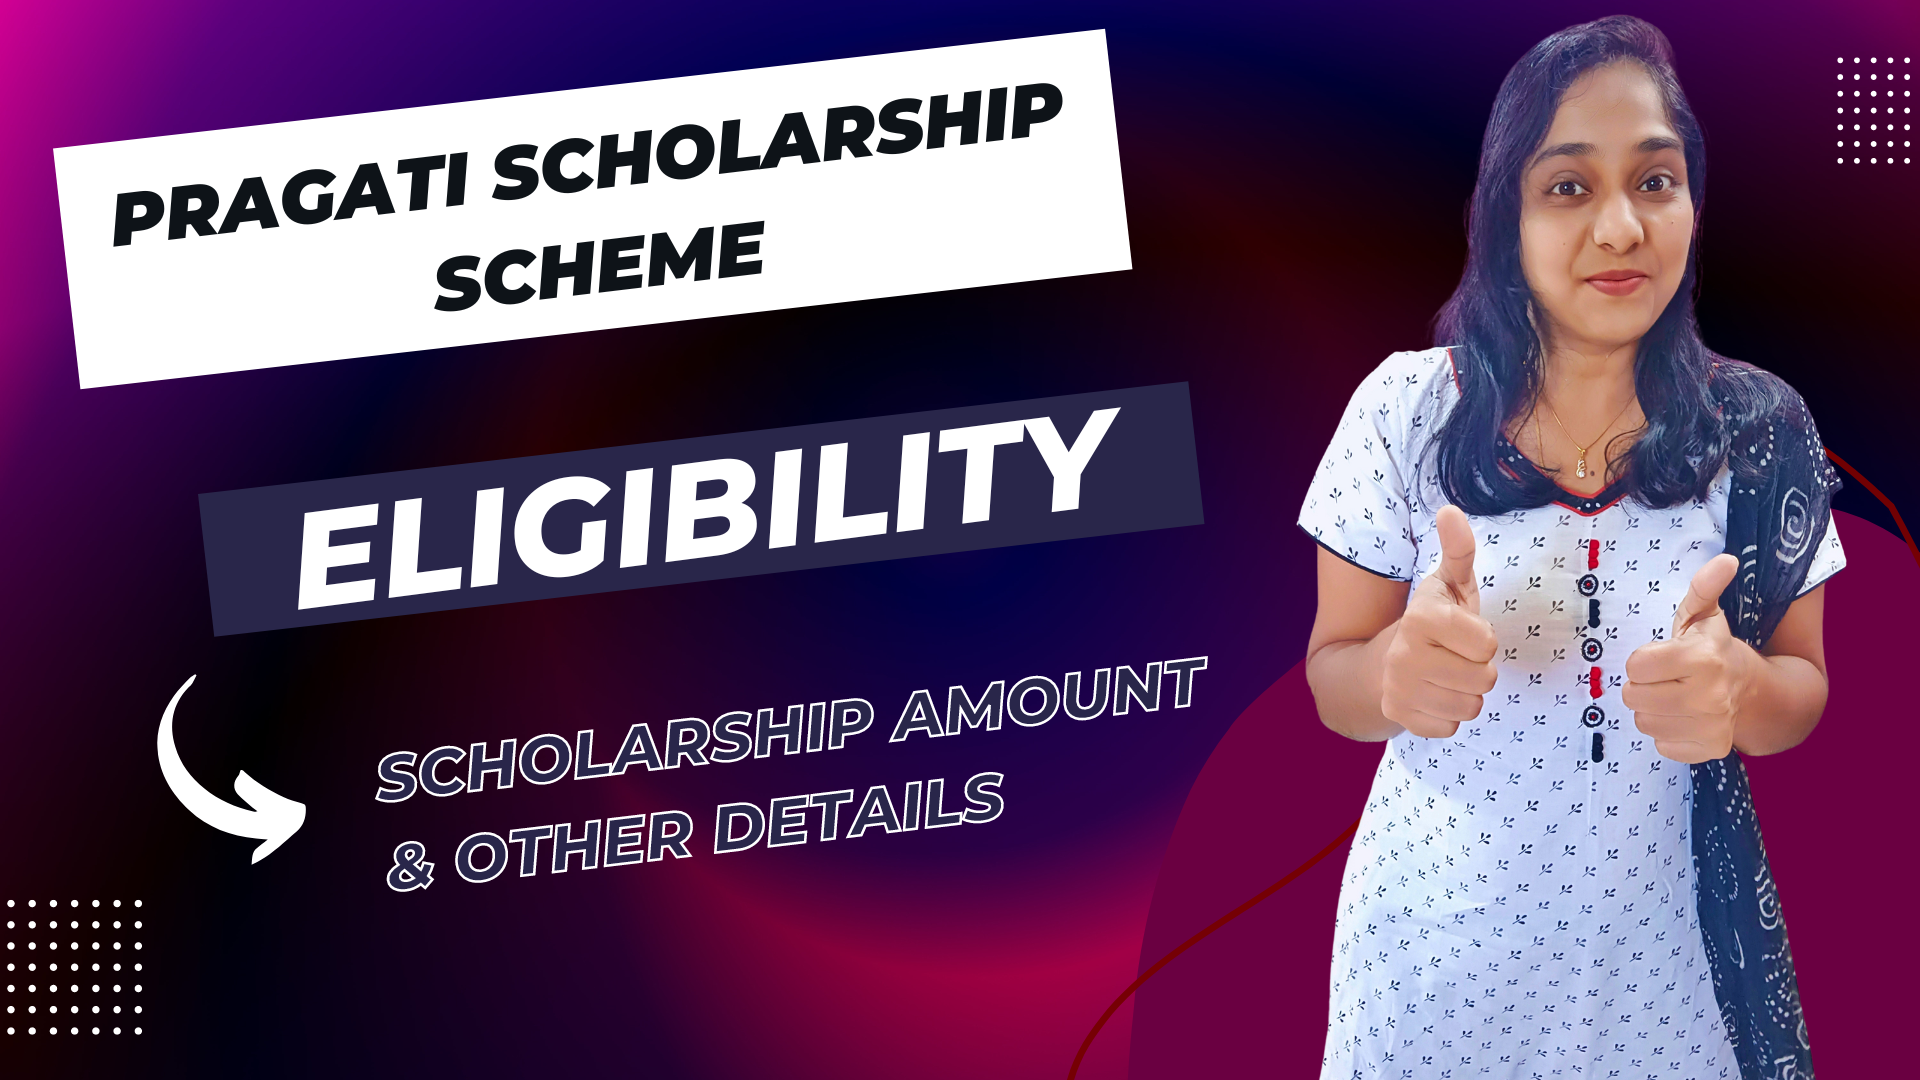 Pragati Scholarship Scheme - AICTE | Eligibility, How Much Will You Get, Details